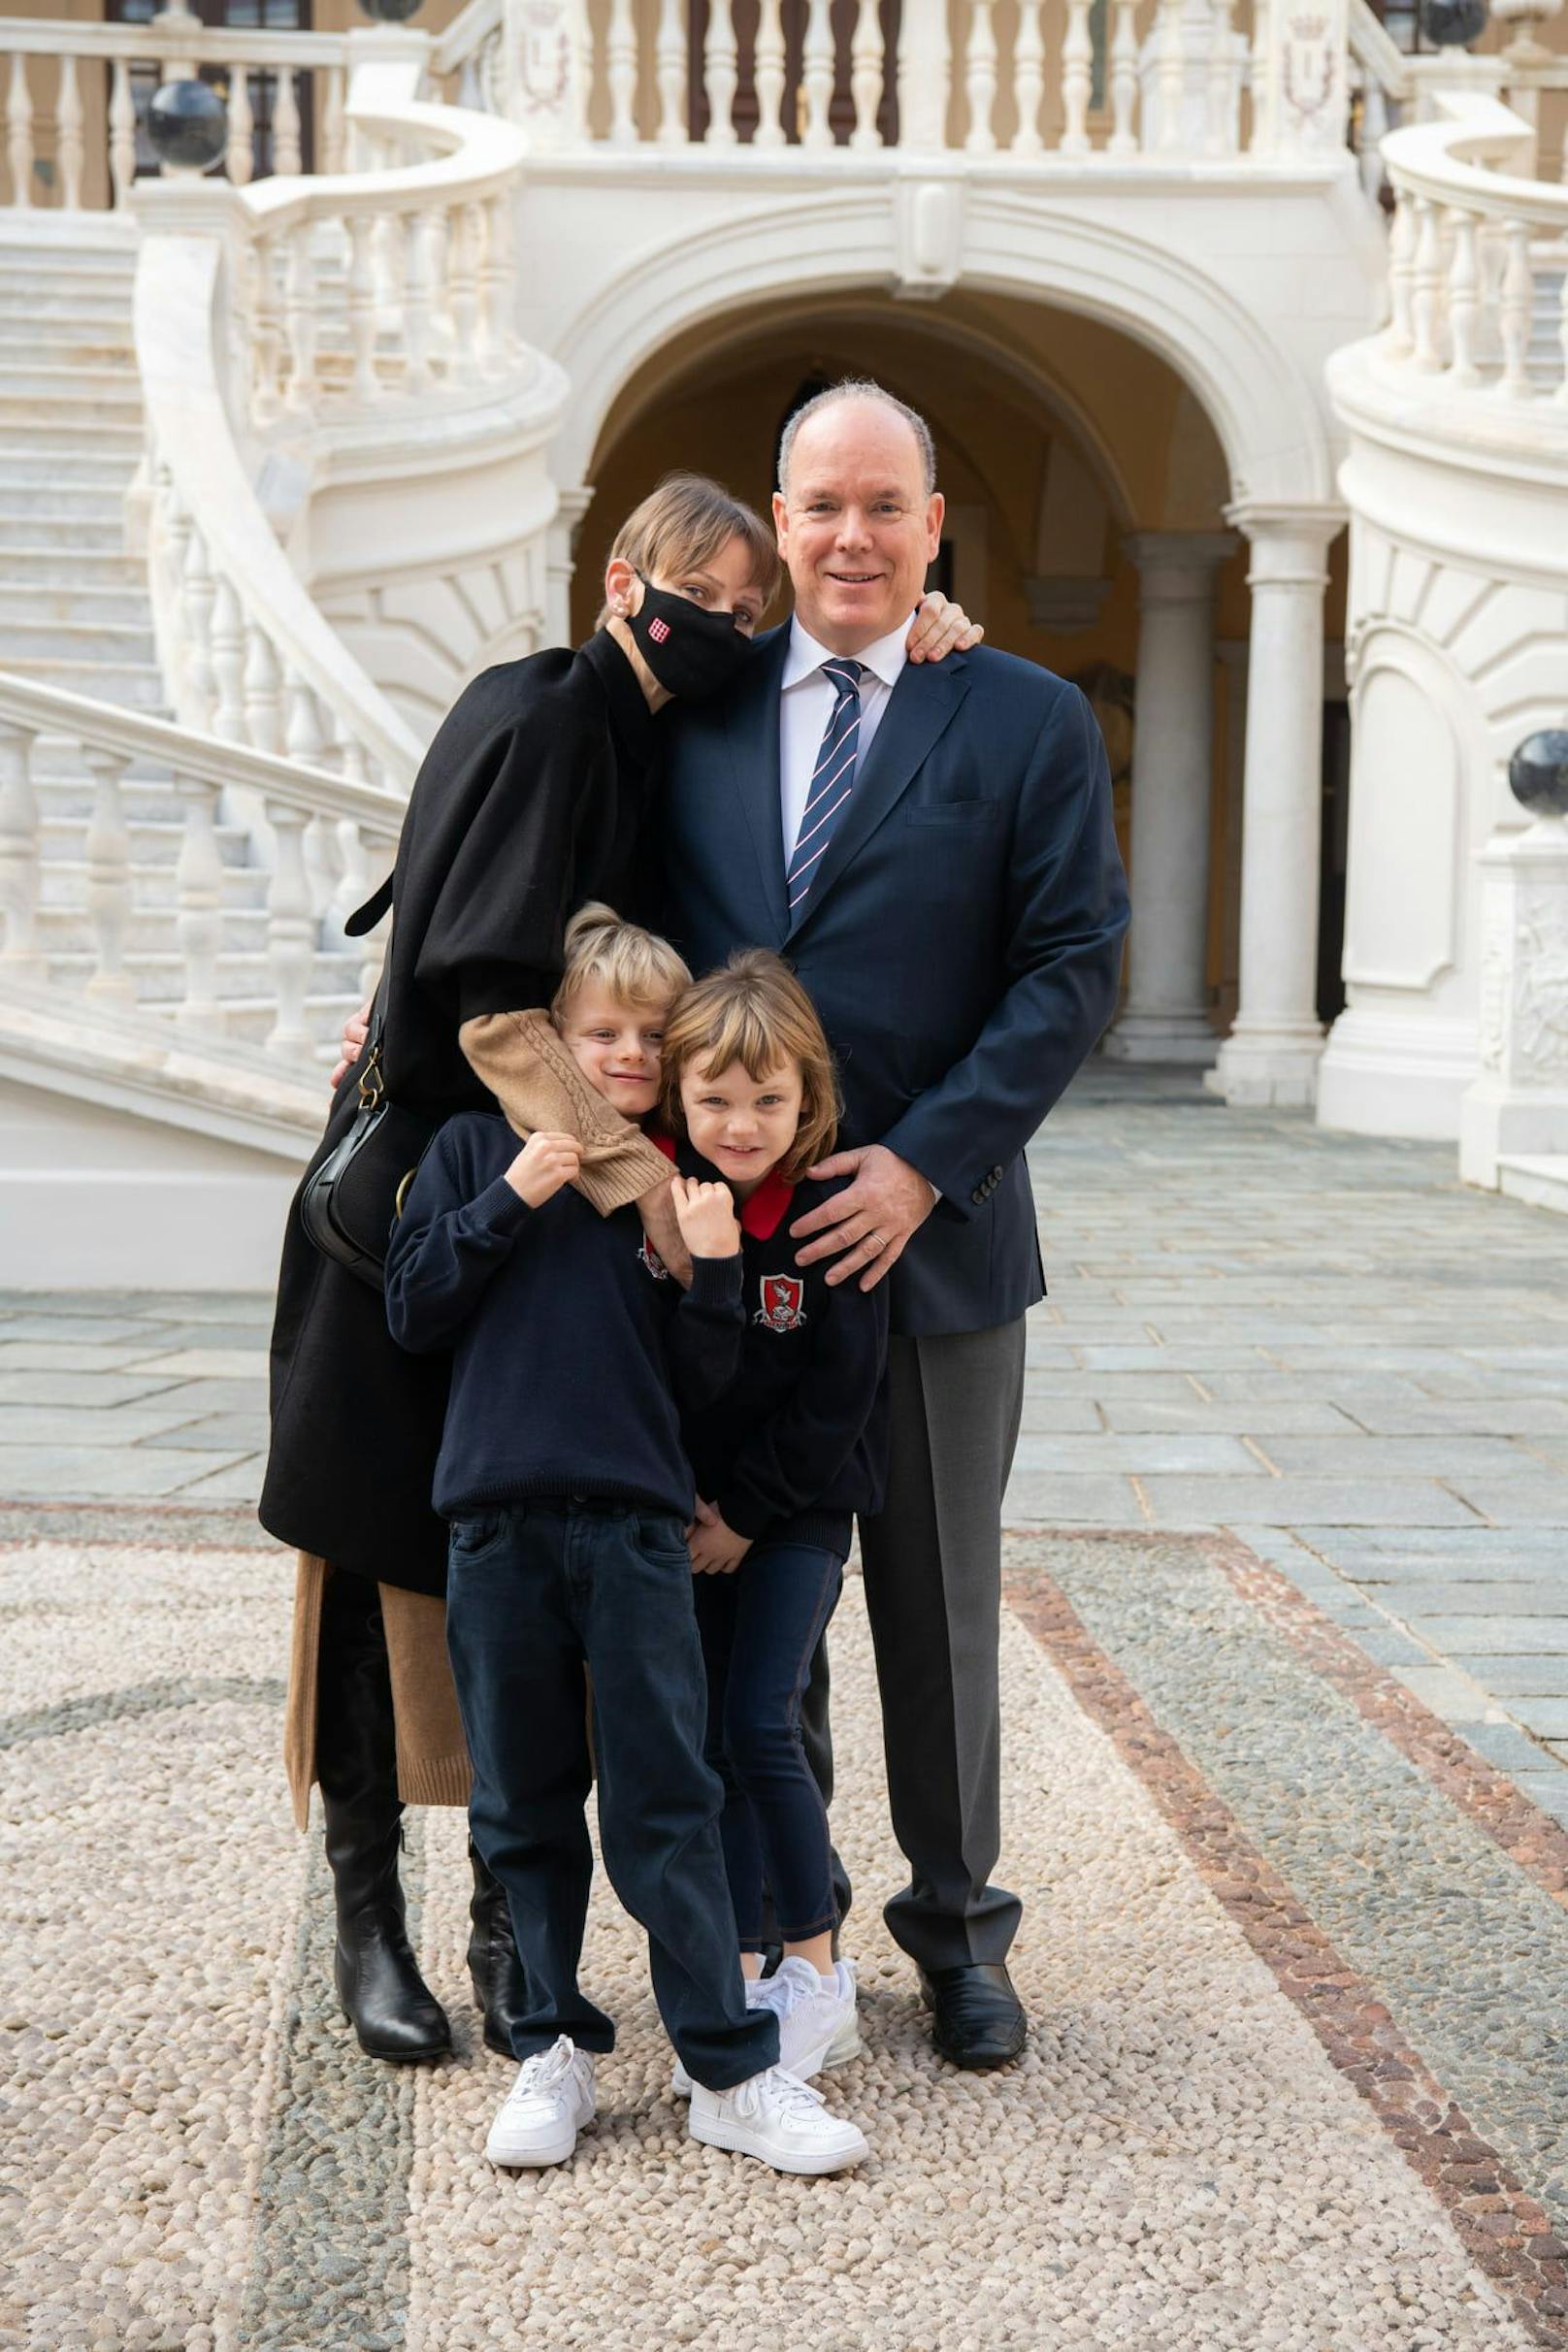 Charlène ist wieder glücklich mit ihrer Familie vereint in Monaco.